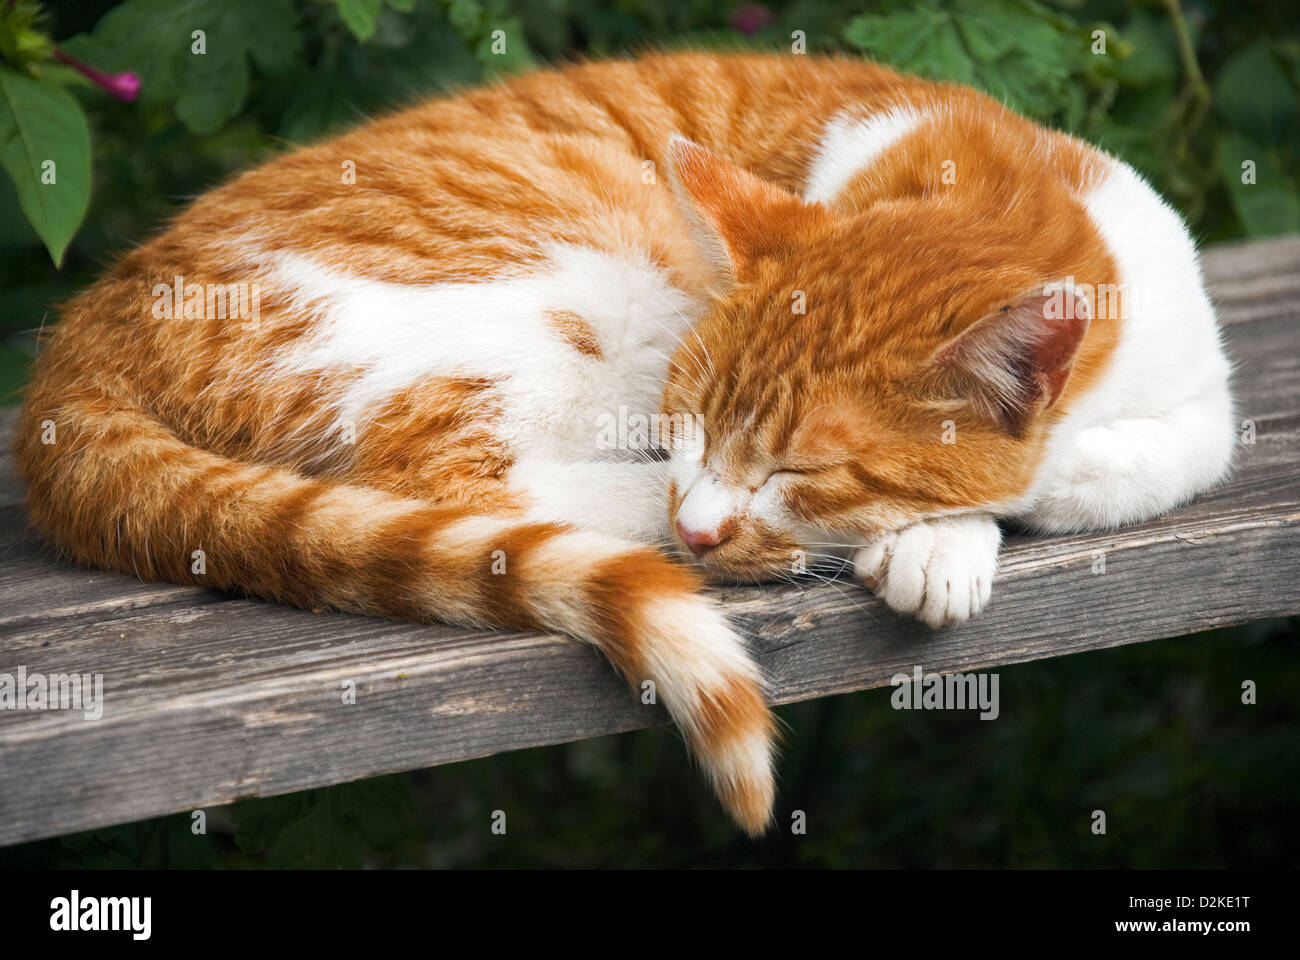 Le gingembre et le chat blanc dort sur banc en bois Banque D'Images